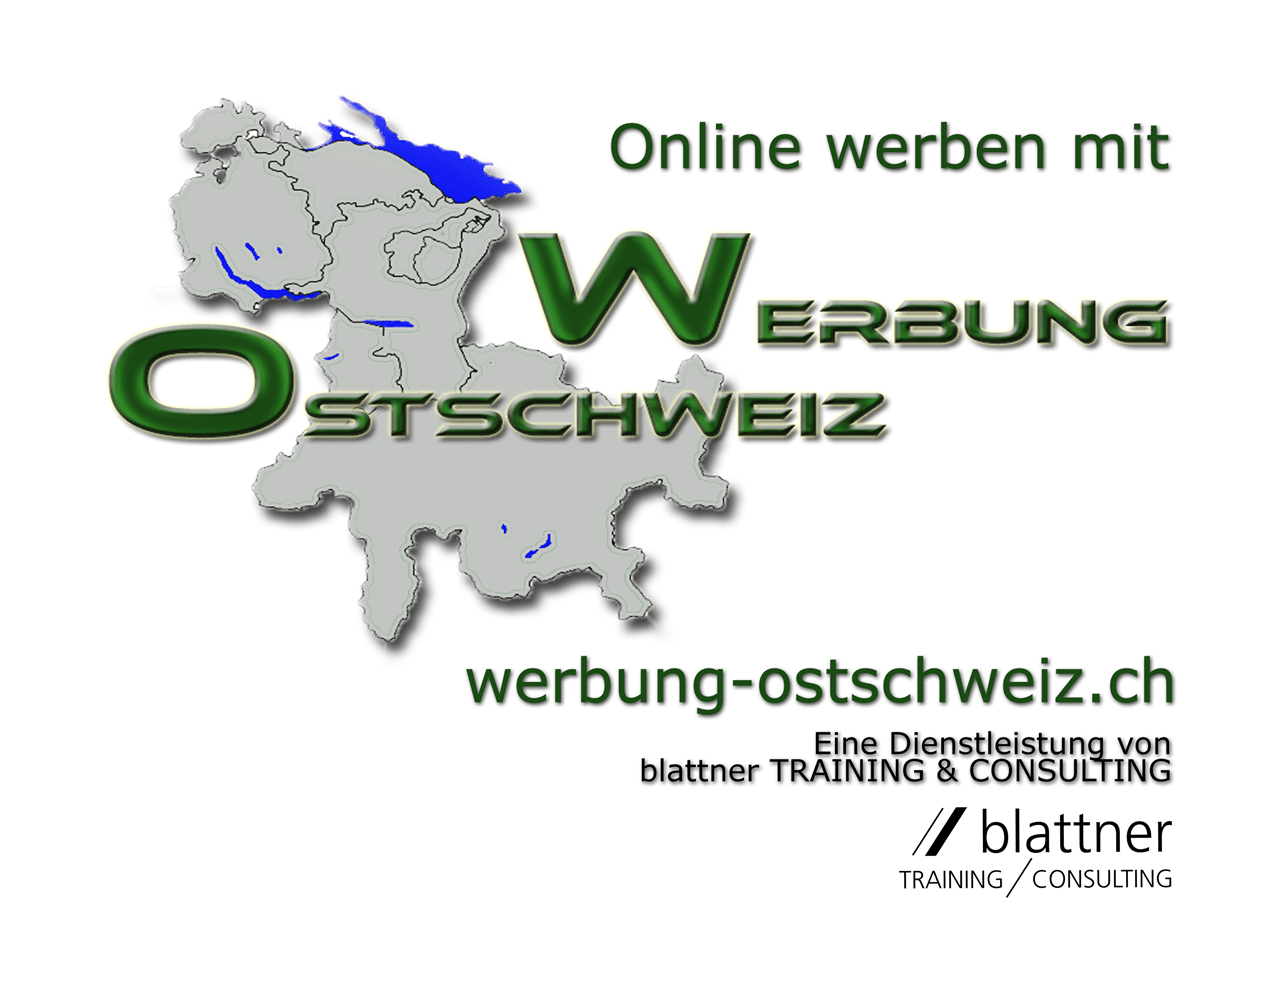 (c) Werbung-ostschweiz.ch